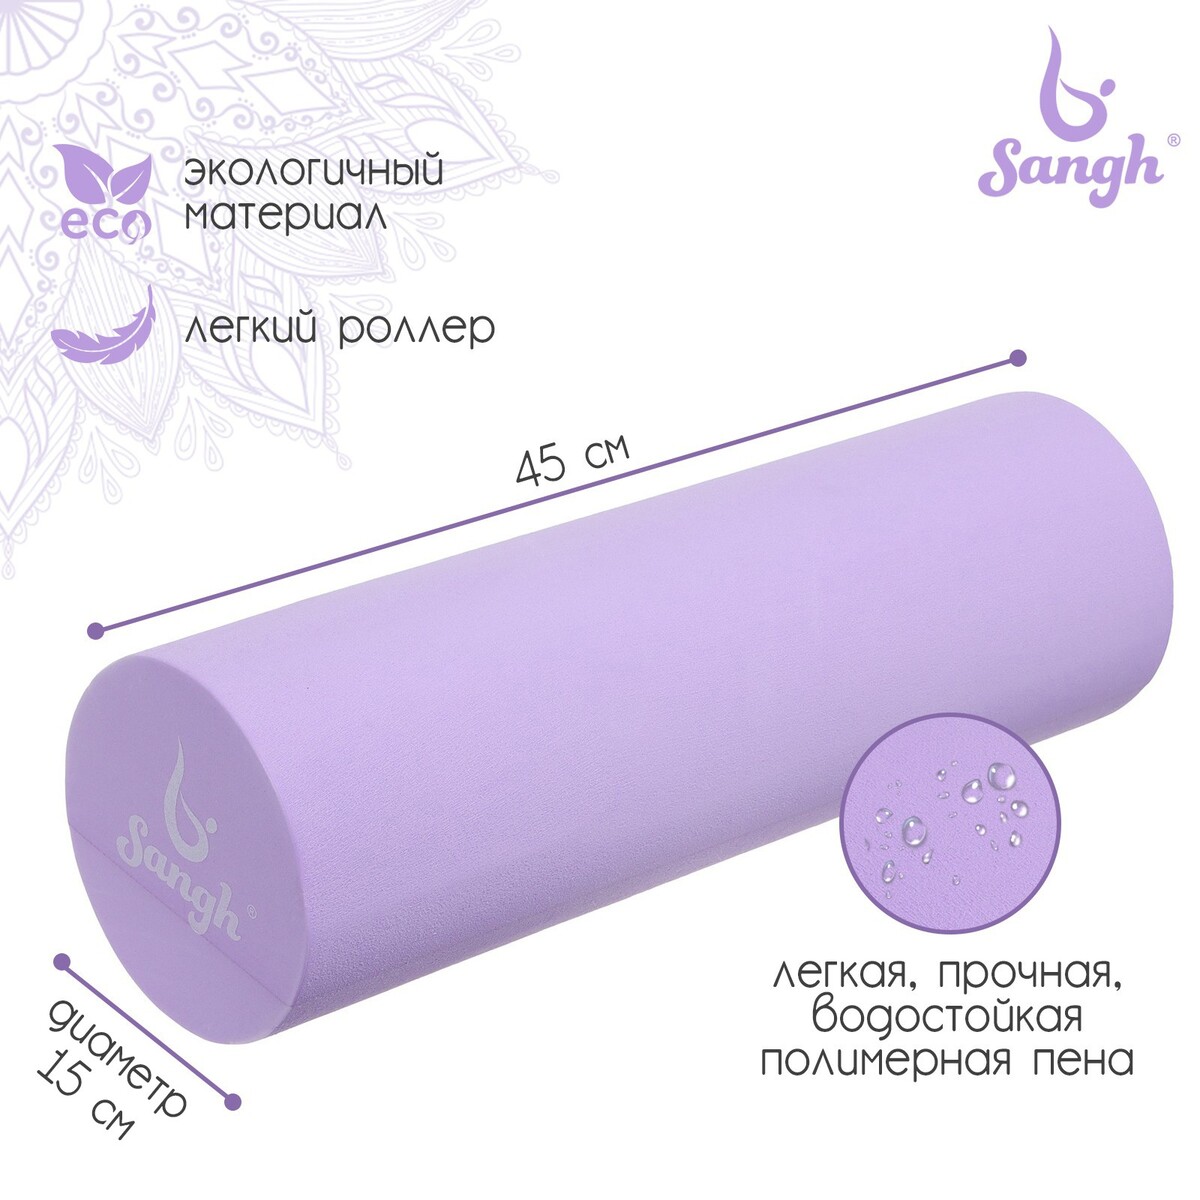 Ролик массажный sangh, 45х15 см, цвет фиолетовый ролик массажный 33x14 cм star fit pro низкая жесткость fa 508 зеленый камуфляж оранжевый